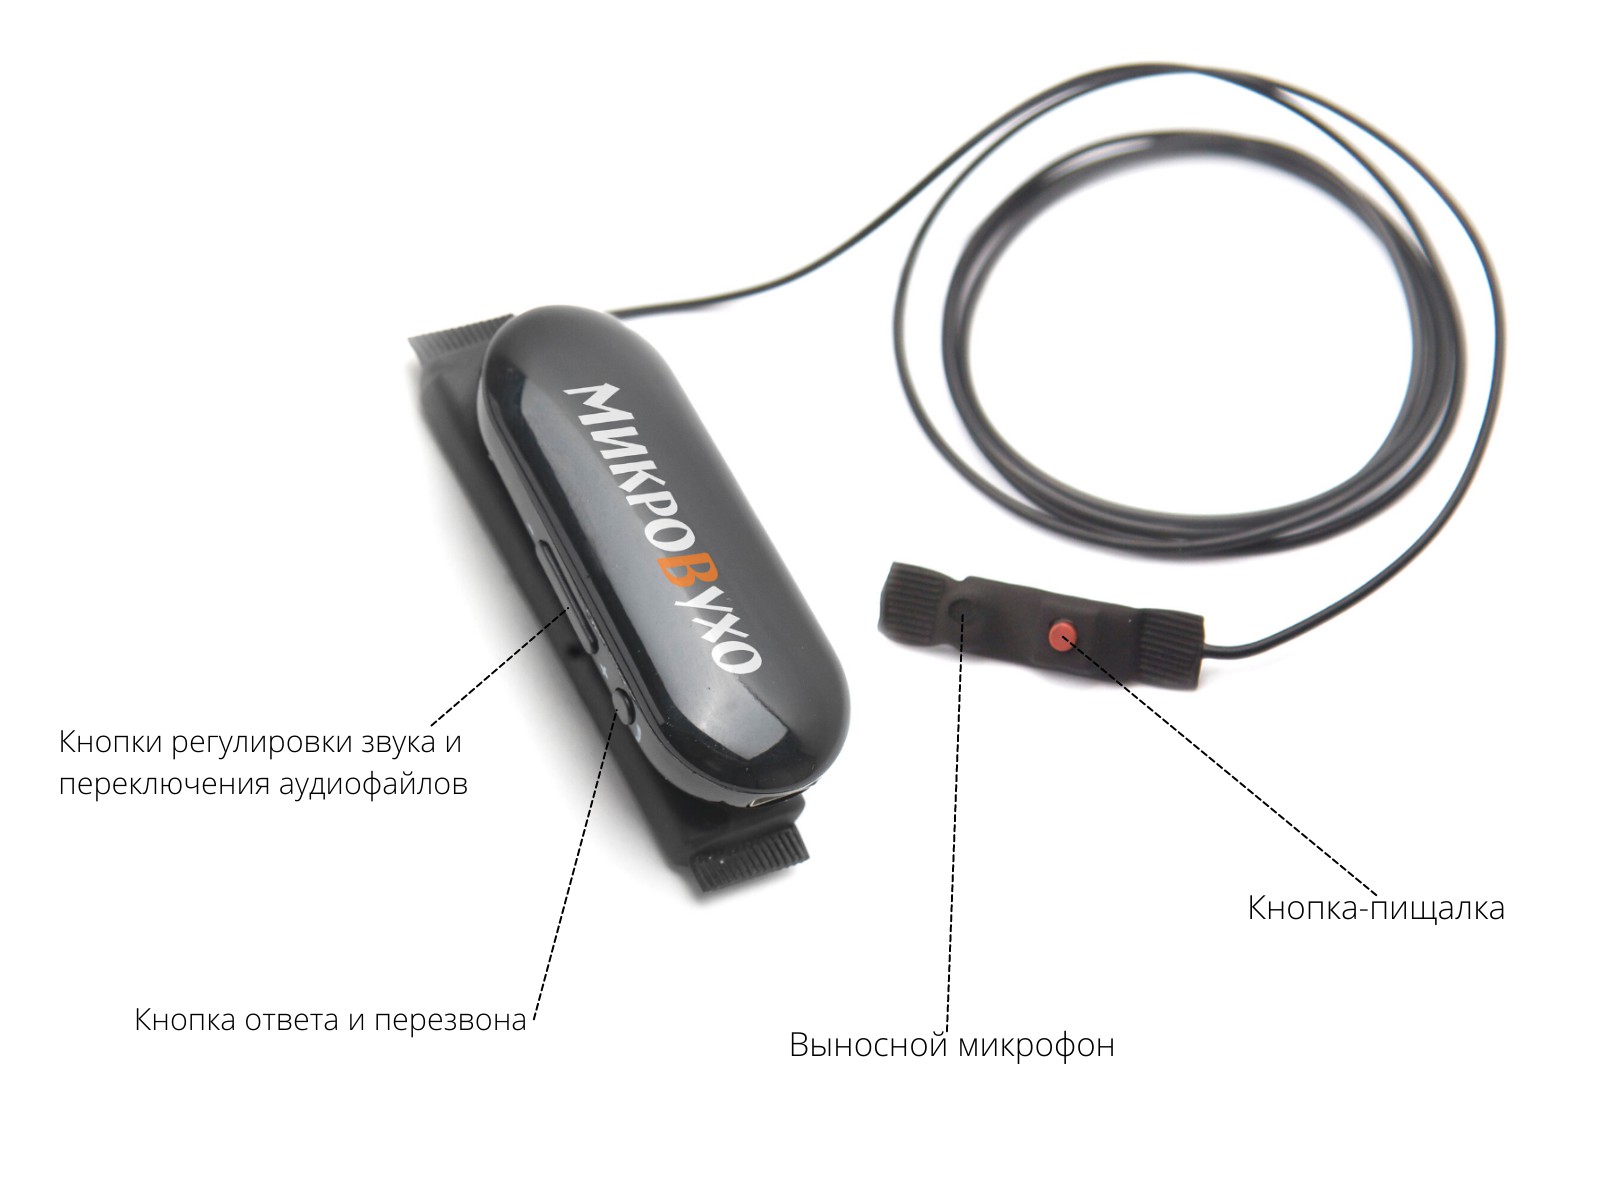 Универсальная гарнитура Bluetooth Box Pro Plus c капсулой Nano 4 мм и магнитами 2 мм - изображение 7